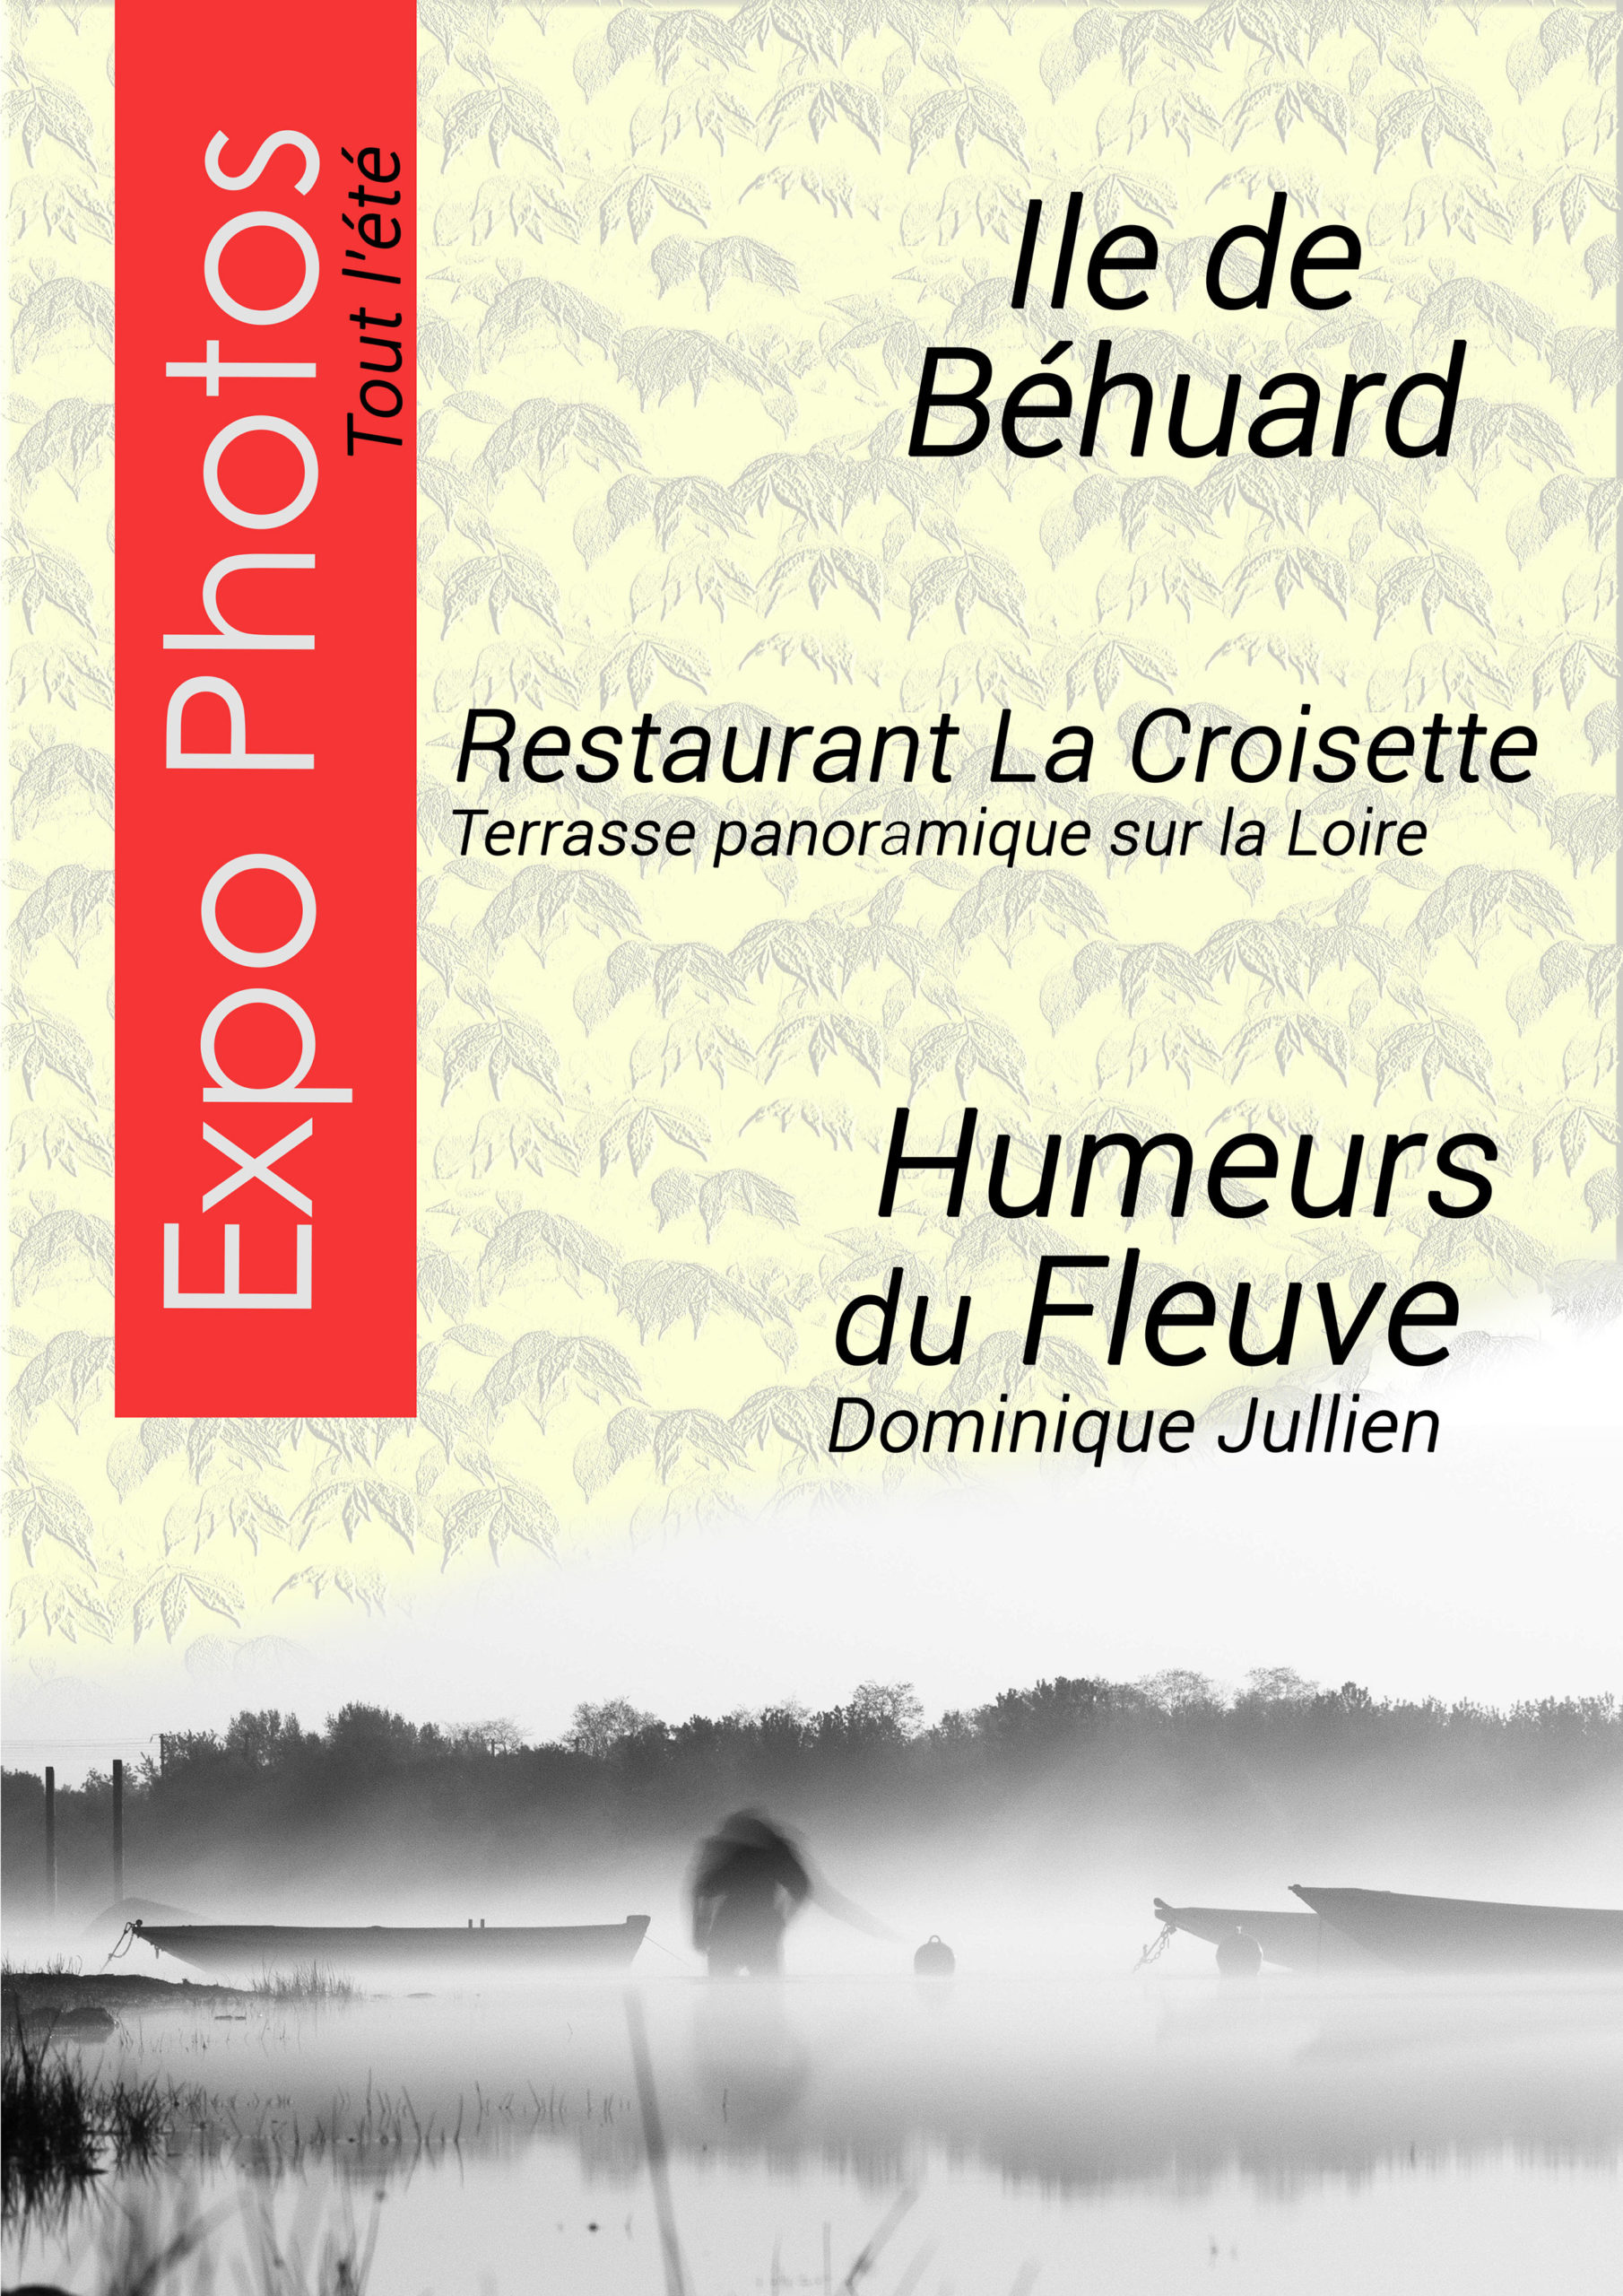 Expo Photos Ile de Béhuard